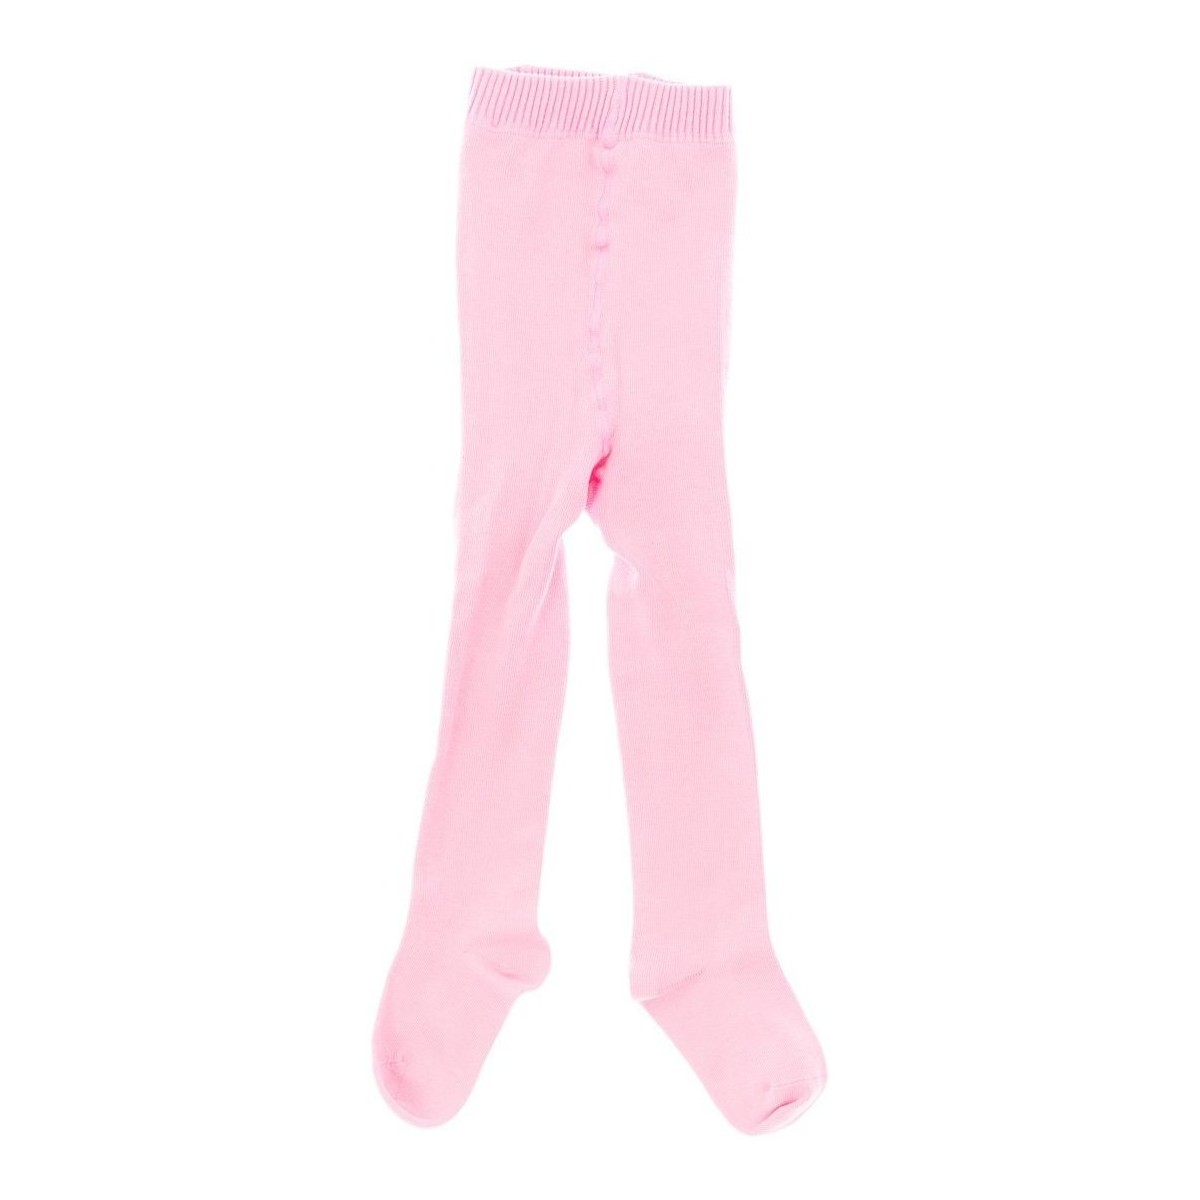 Ondergoed Meisjes Panty’s/Kousen Marie Claire 2501-ROSA Roze